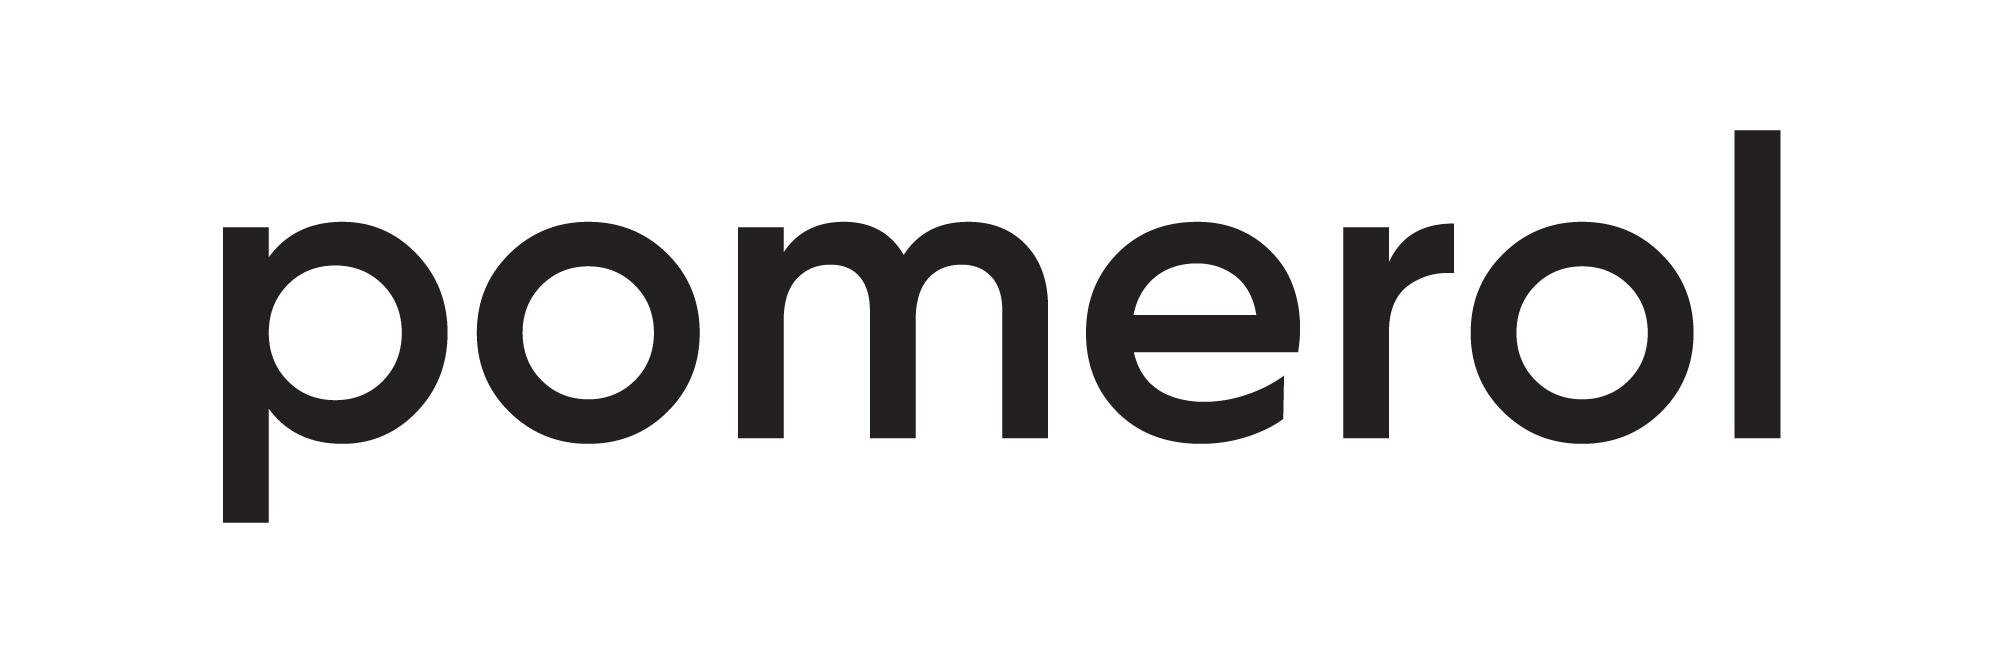 Logoya Pomerol